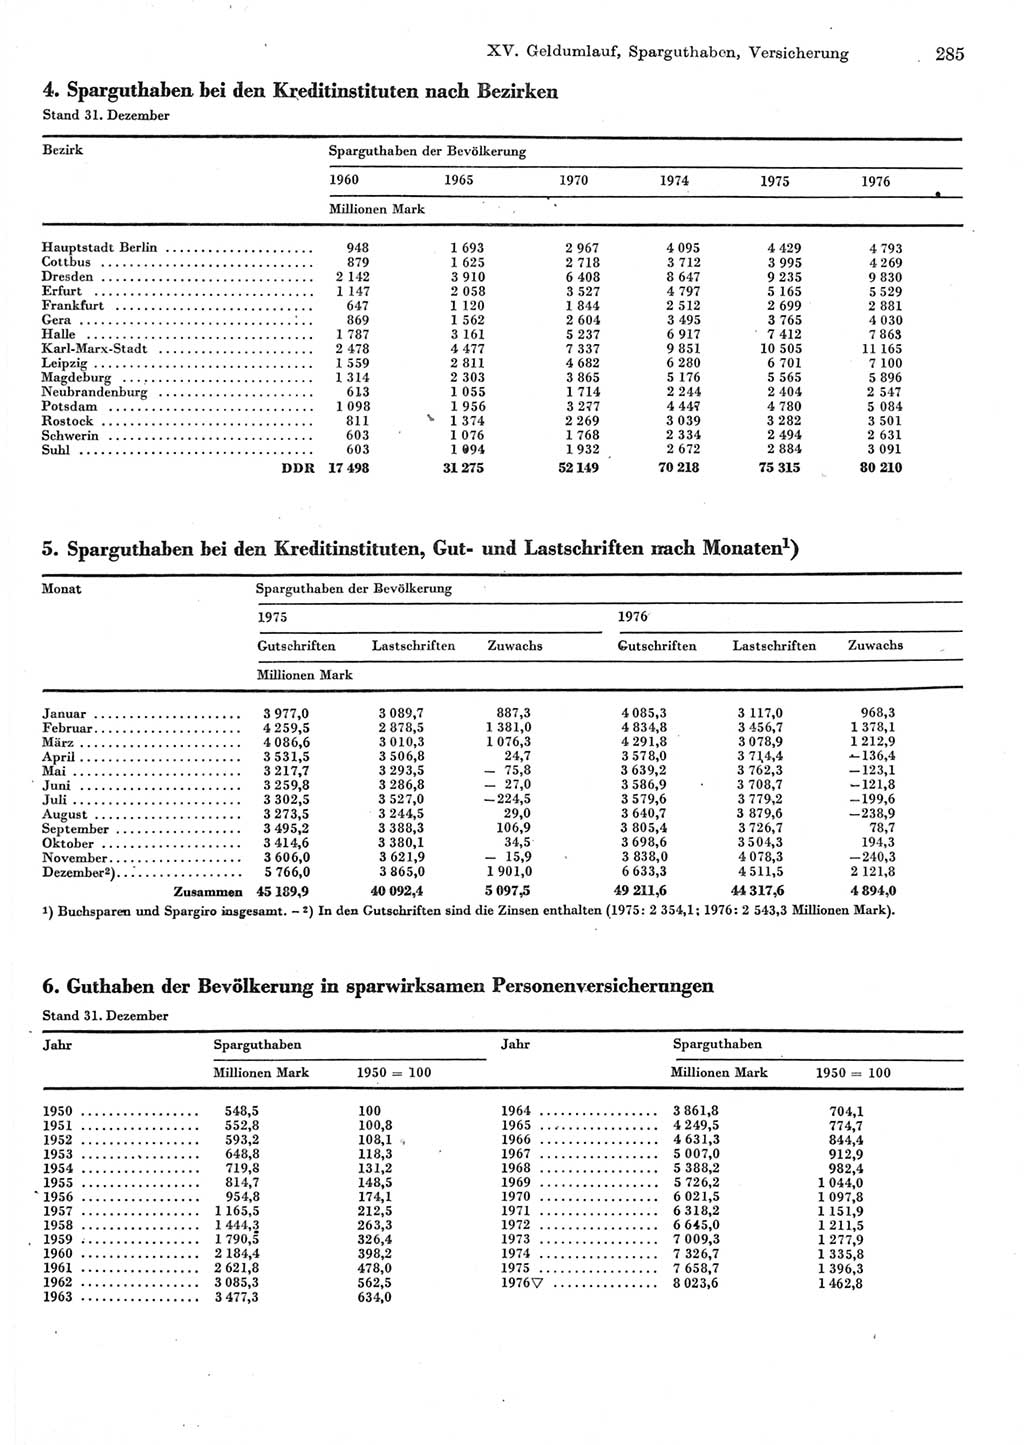 Statistisches Jahrbuch der Deutschen Demokratischen Republik (DDR) 1977, Seite 285 (Stat. Jb. DDR 1977, S. 285)